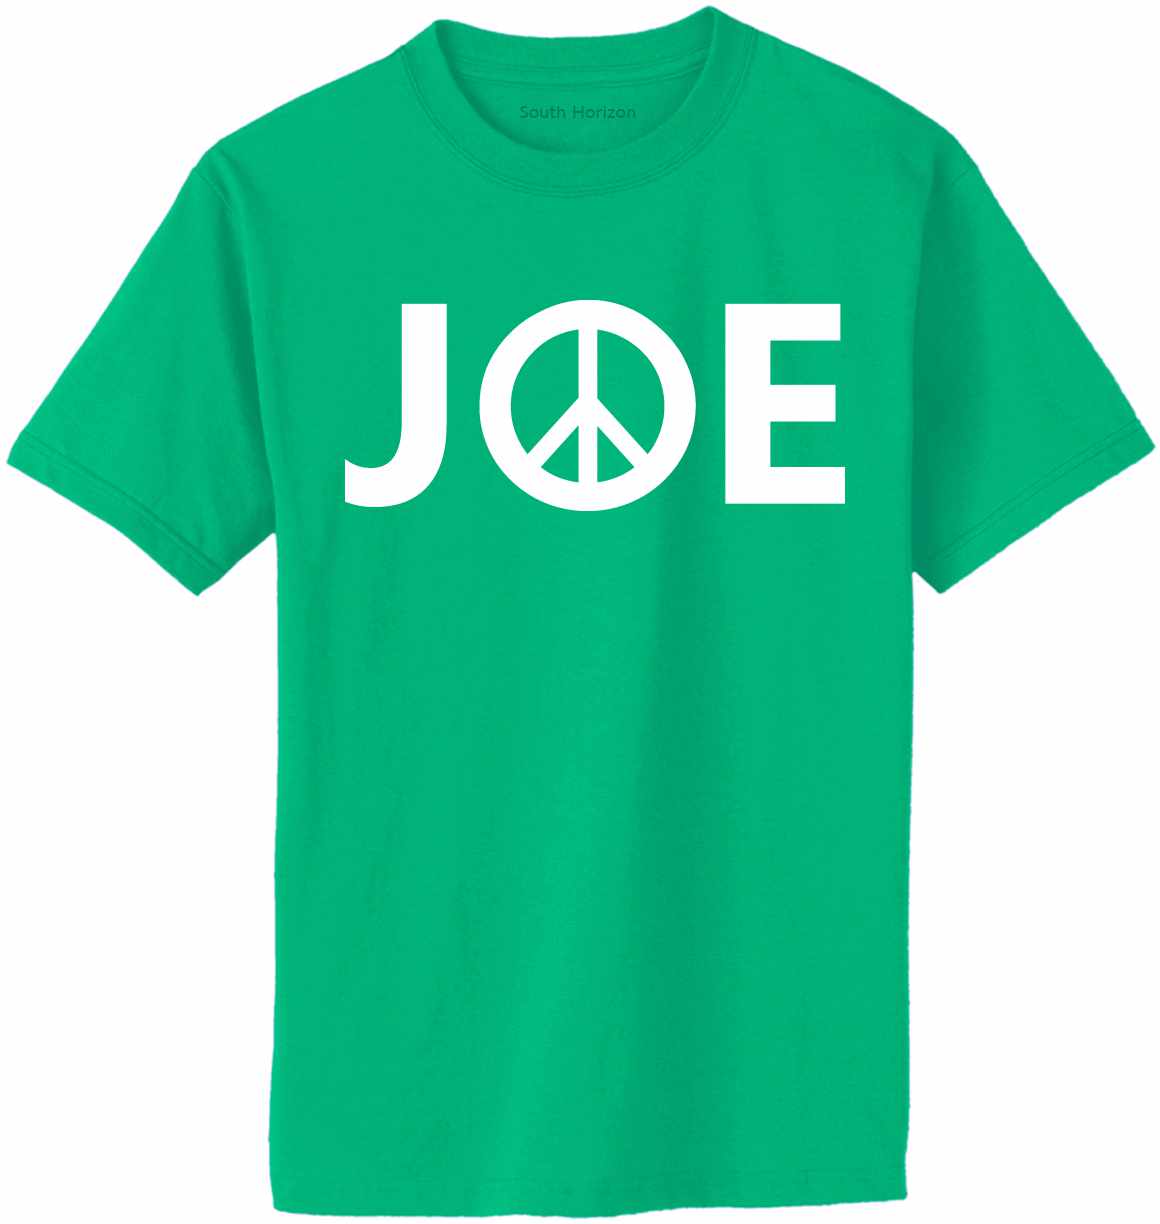 JOE (BIDEN PEACE) Adult T-Shirt